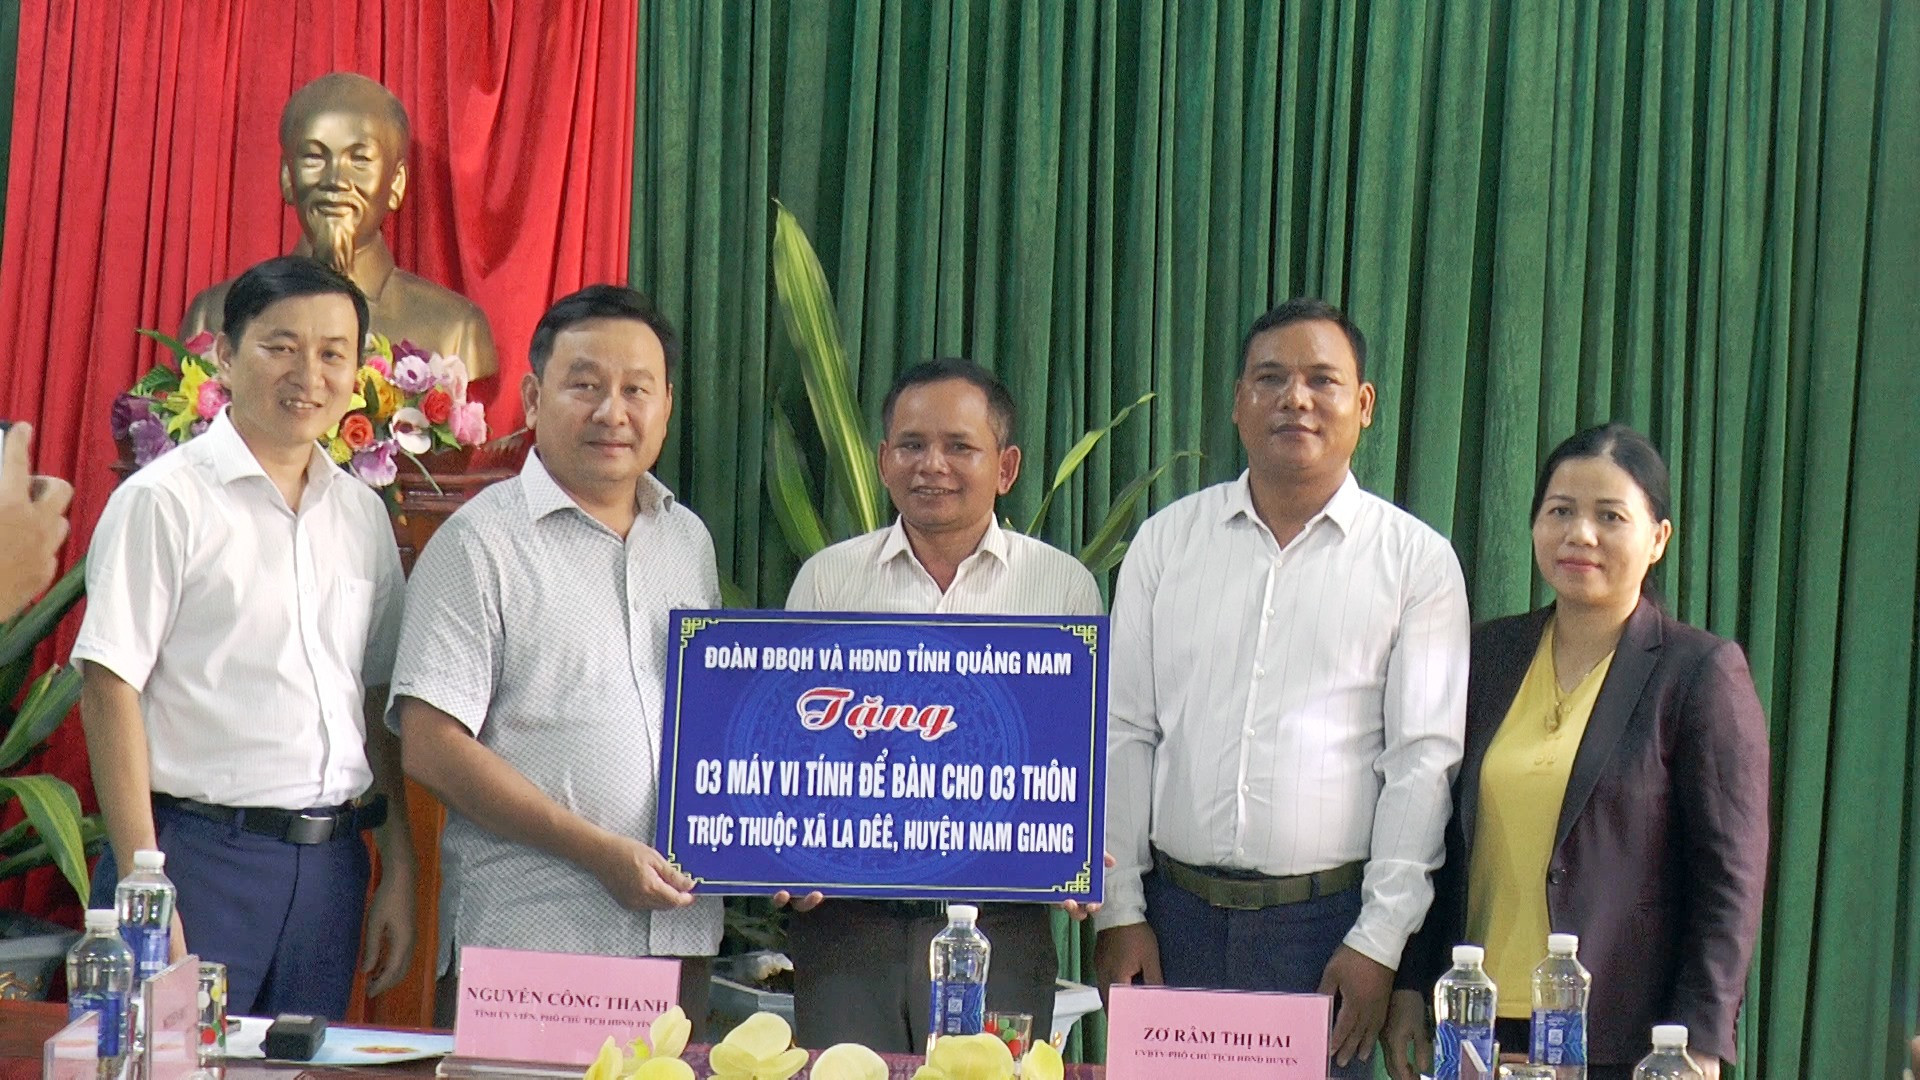 Đoàn ĐBQH và HĐND tỉnh tặng 03 máy tính để bàn cho 3 thôn thuộc xã La Dêê.